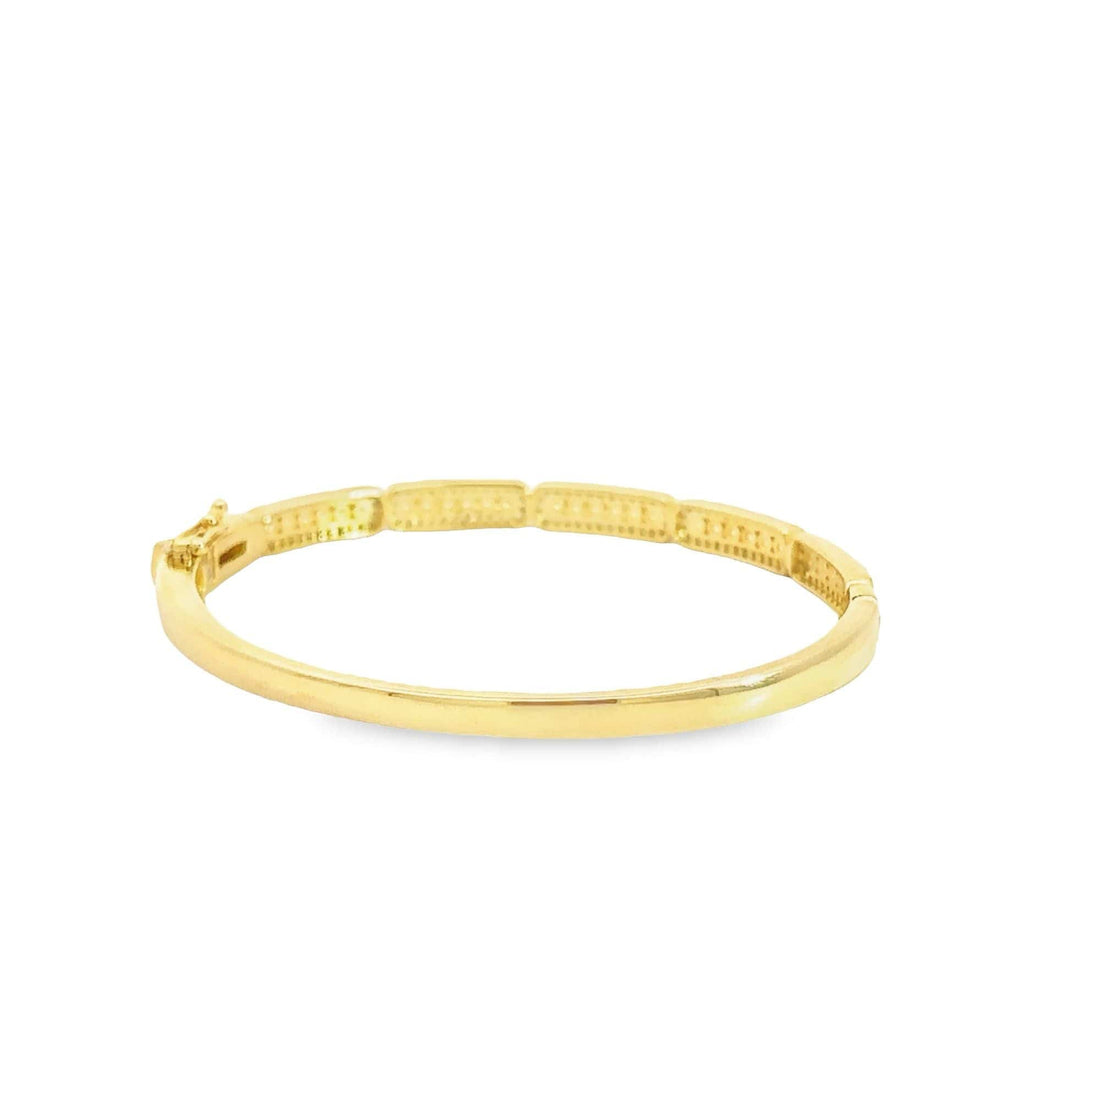 Baikalla Jewelry Gold Bangle Bracelet Sterling Silver Gold Plated CZ Oval Bangle Bracelet